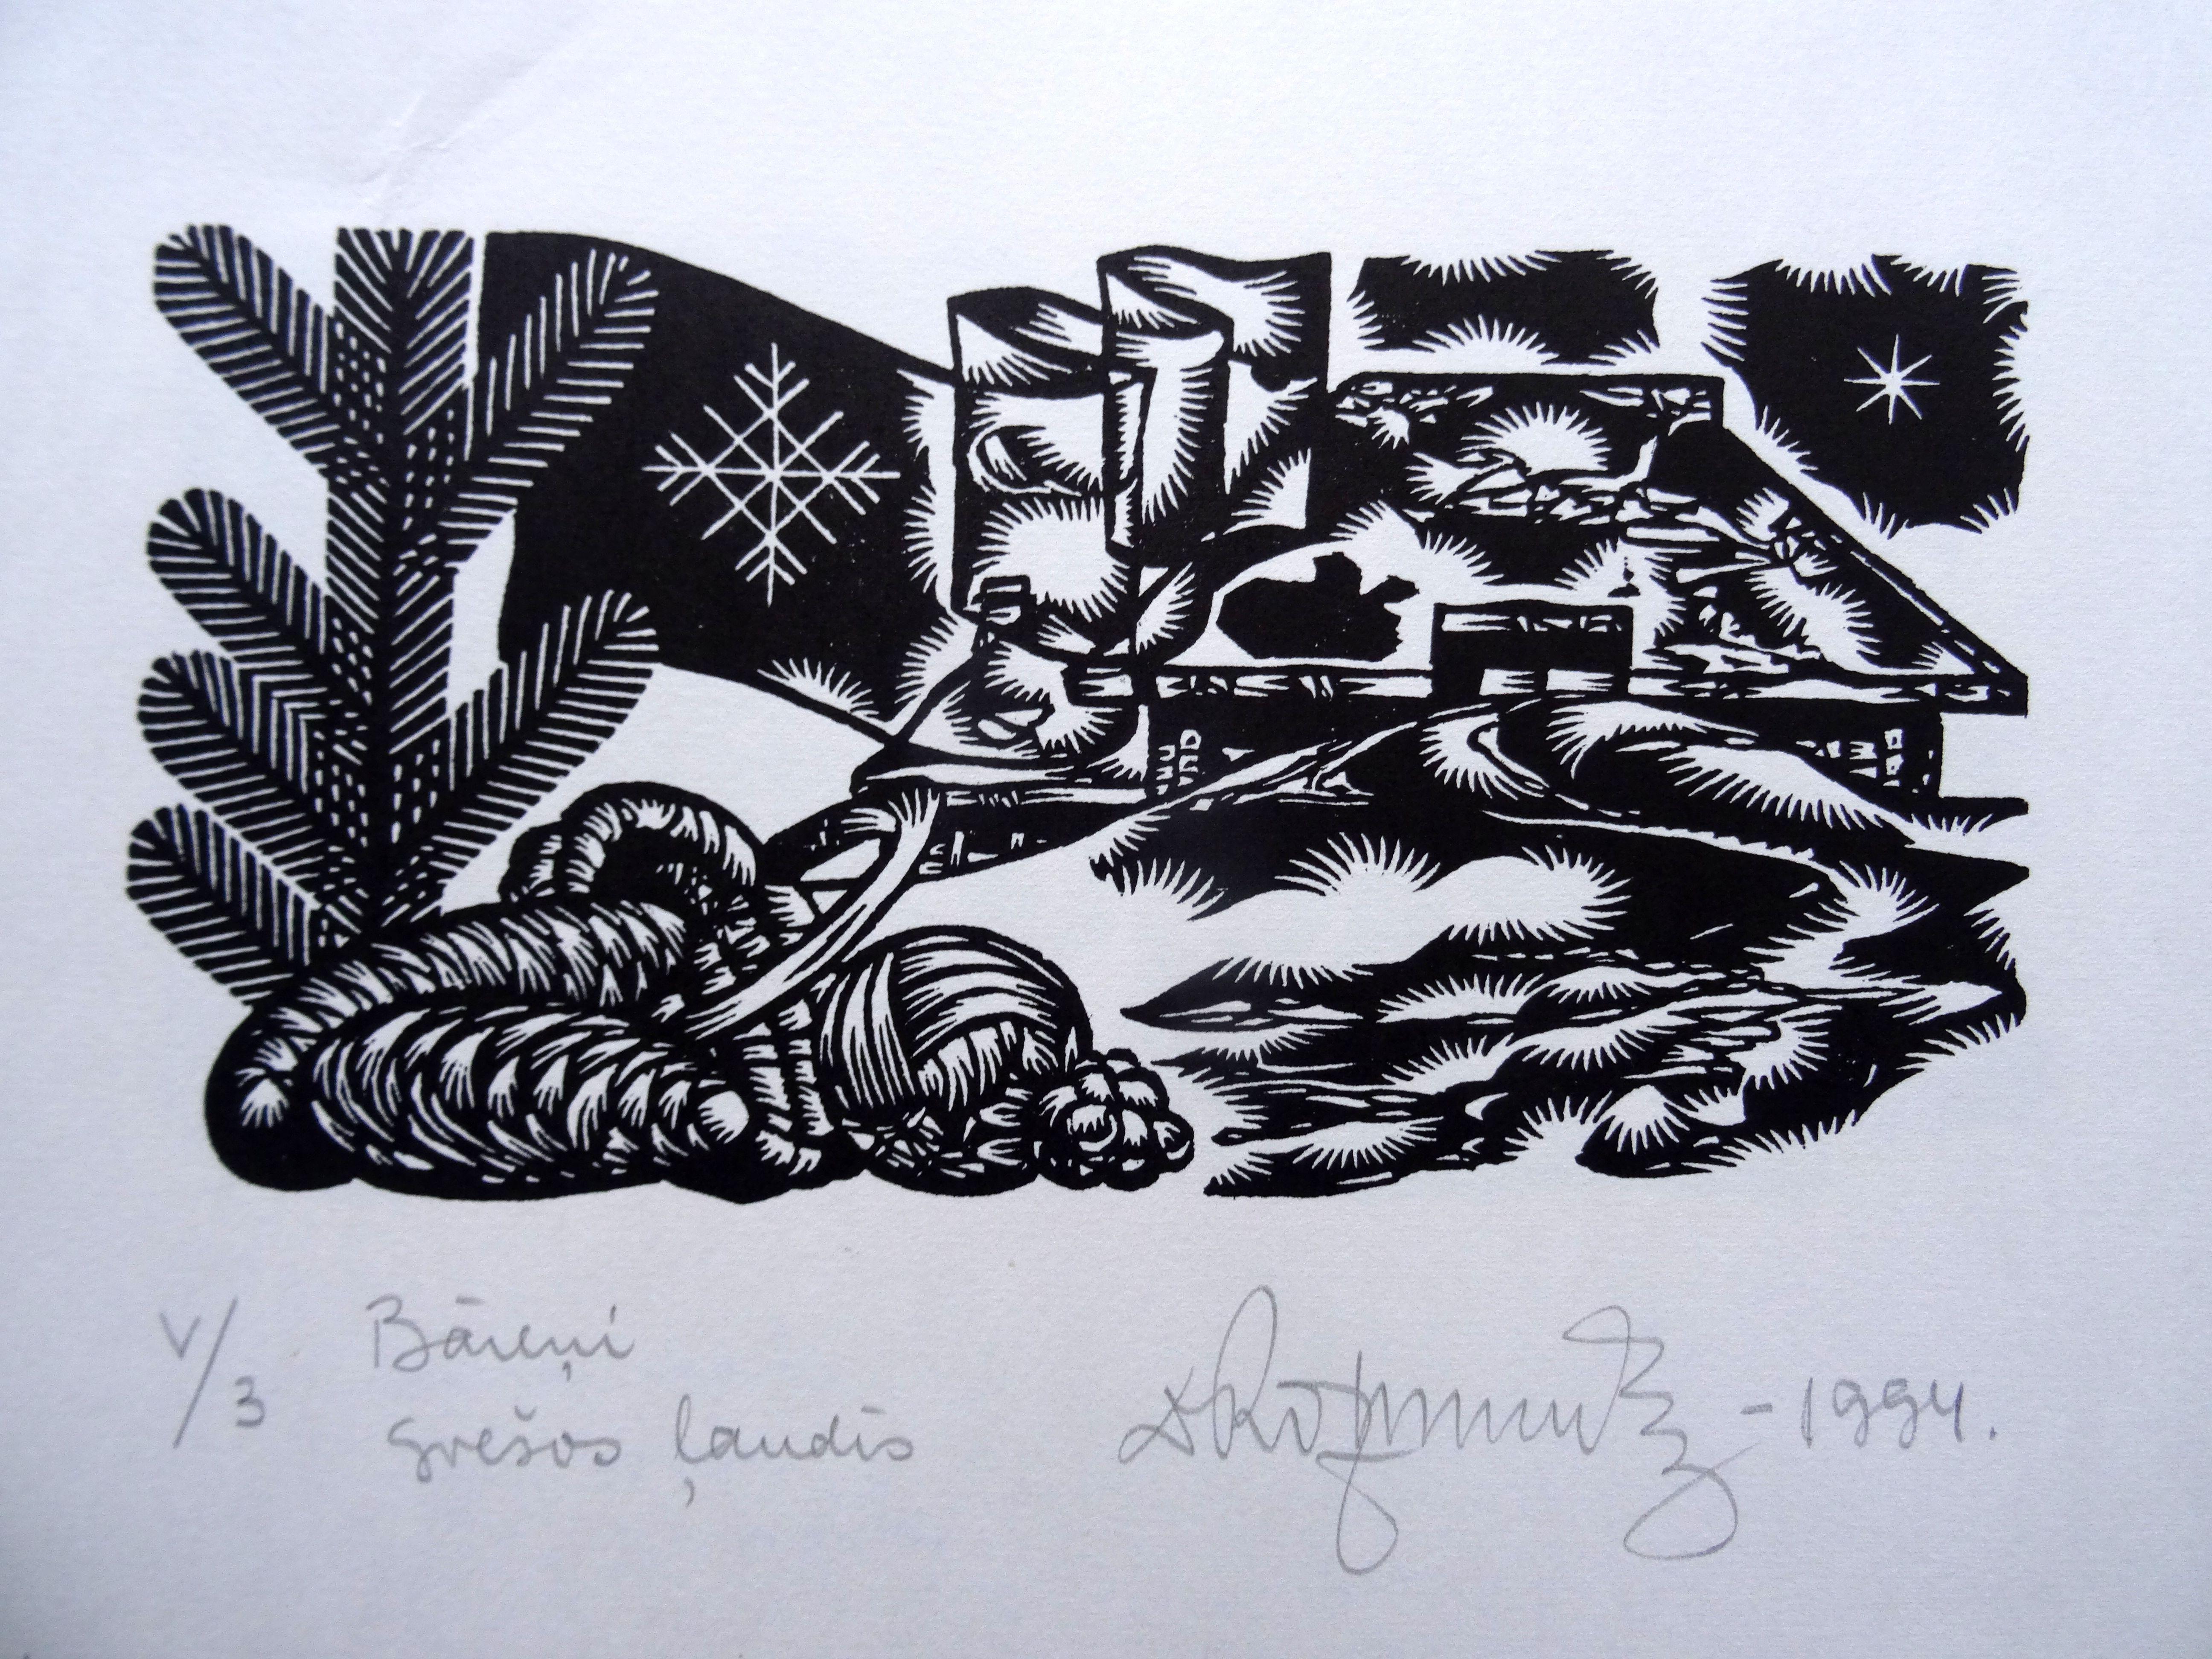 Dans des étrangers. 1994. Papier, linogravure, 25 x33 cm